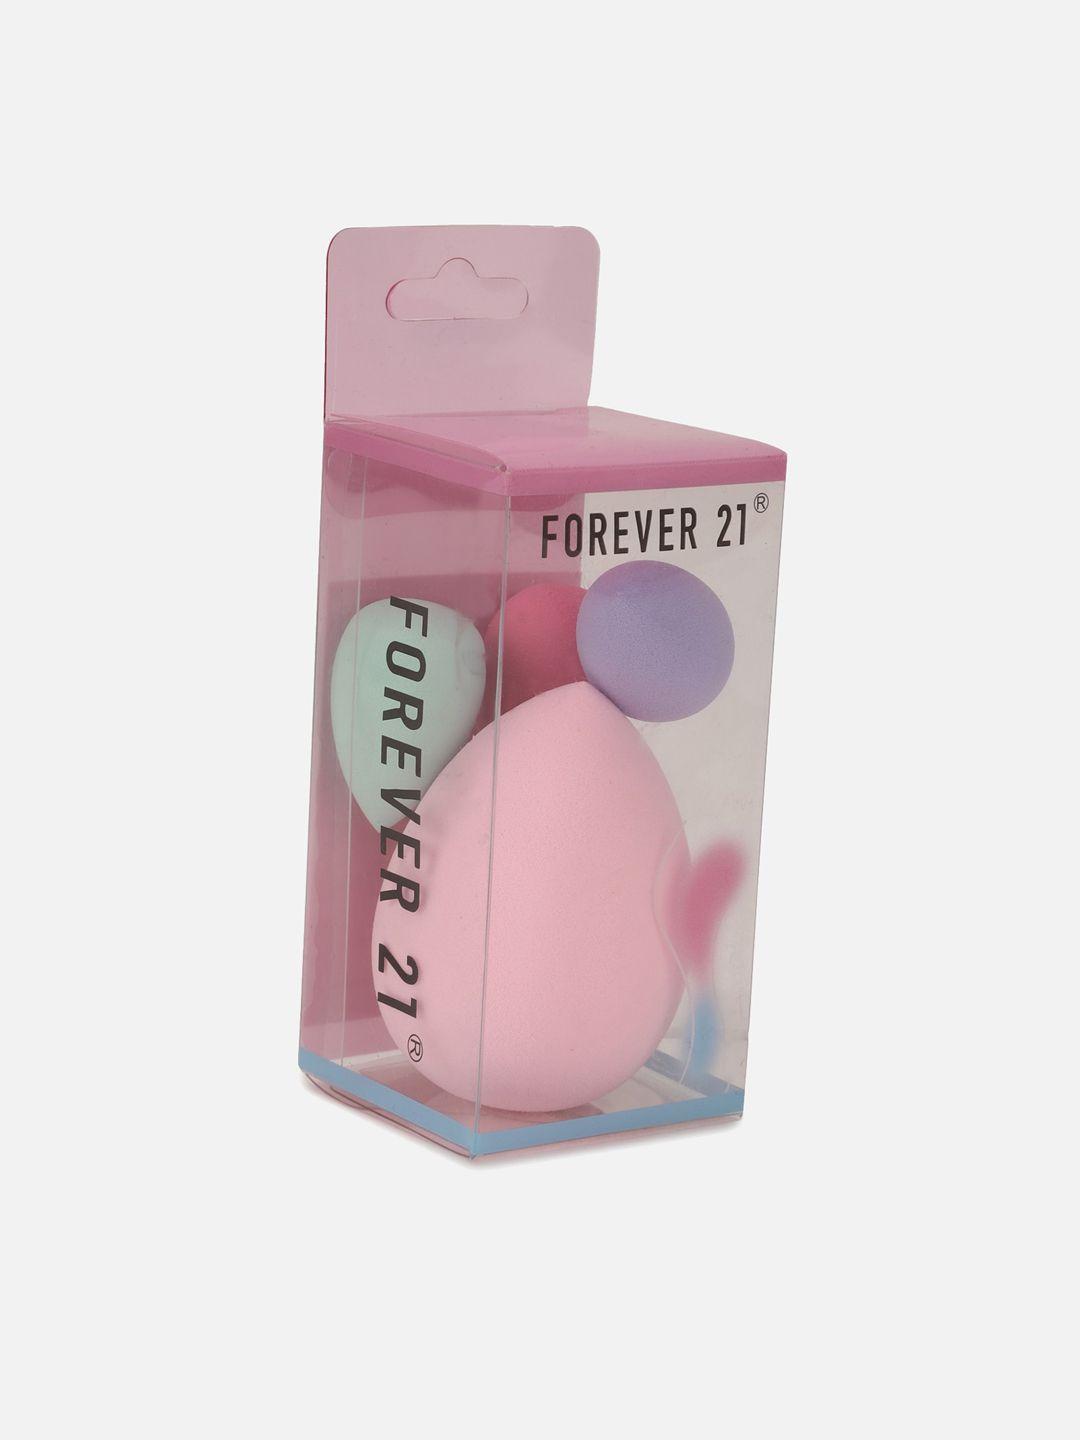 forever-21-set-of-4--makeup-sponge